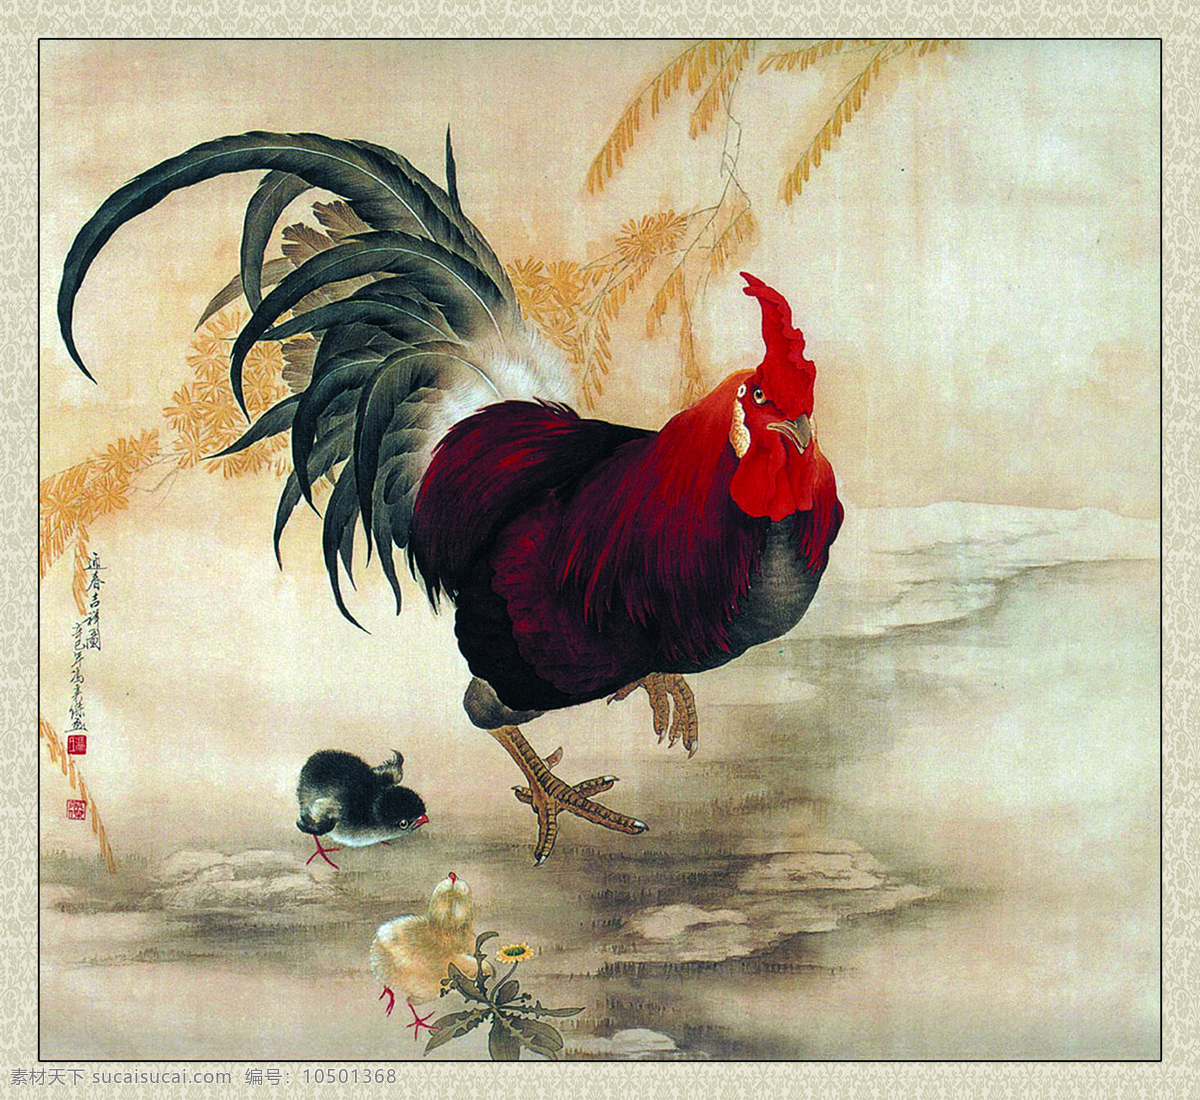 迎春吉祥图 美术 中国画 工笔画 动物 大公鸡 小鸡仔 野地 植物 冯英杰国画 文化艺术 绘画书法